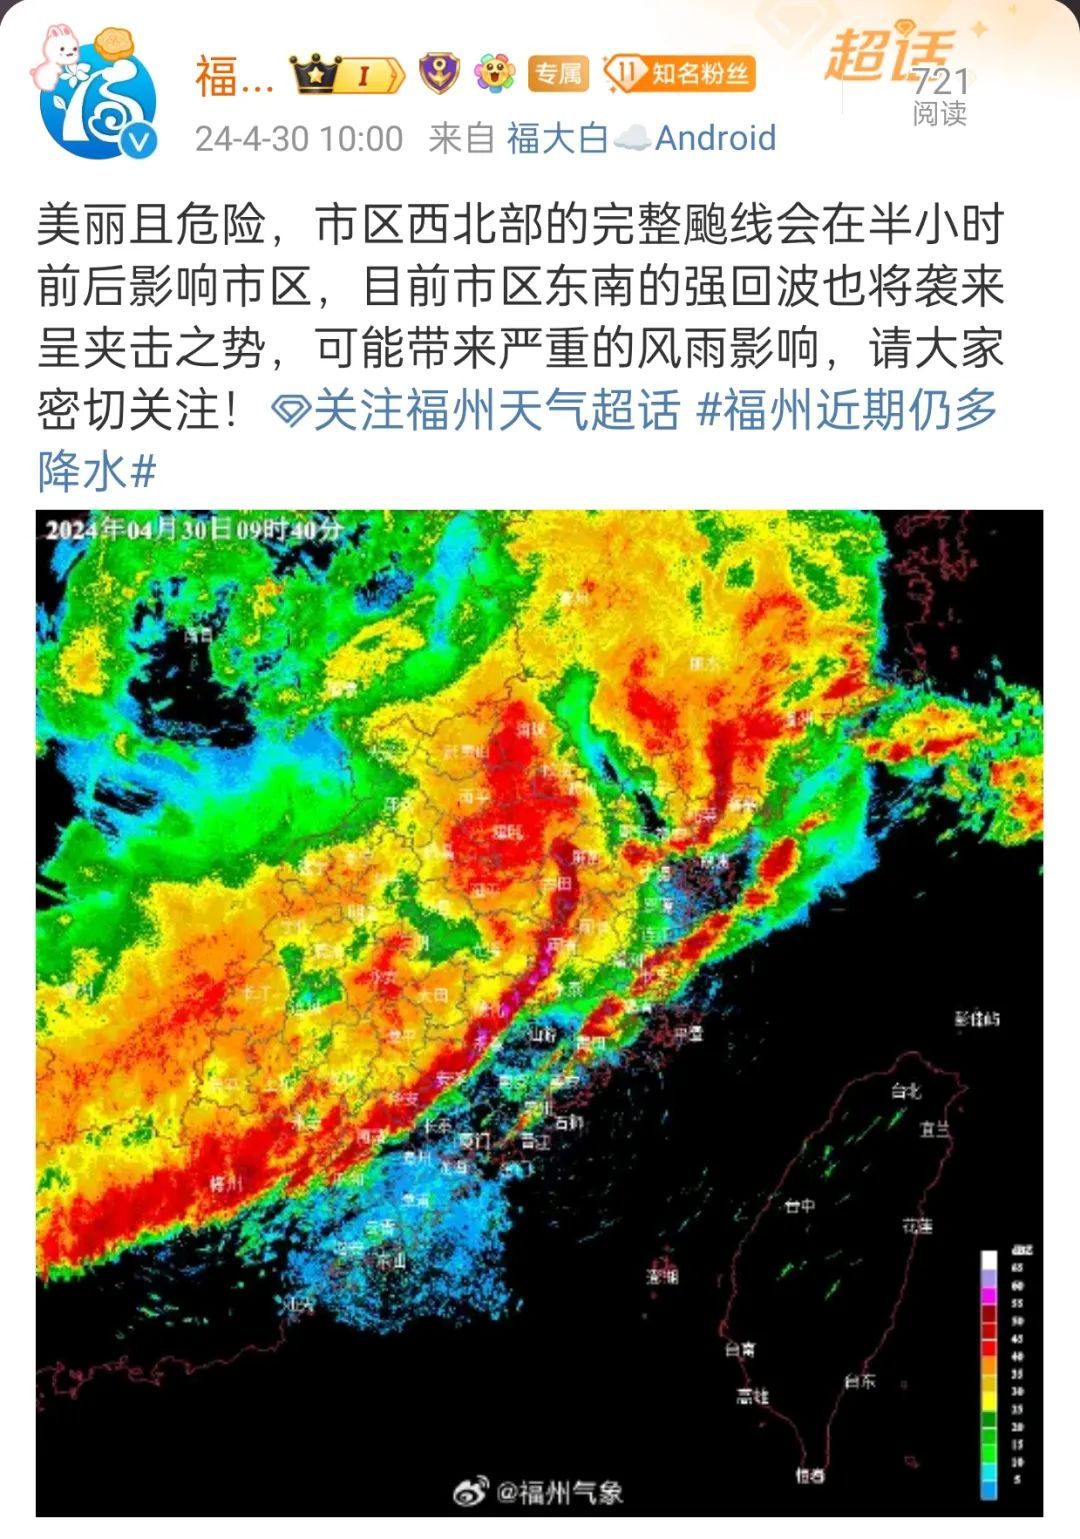 大风!冰雹!福州连发多条预警!或有严重风雨影响!